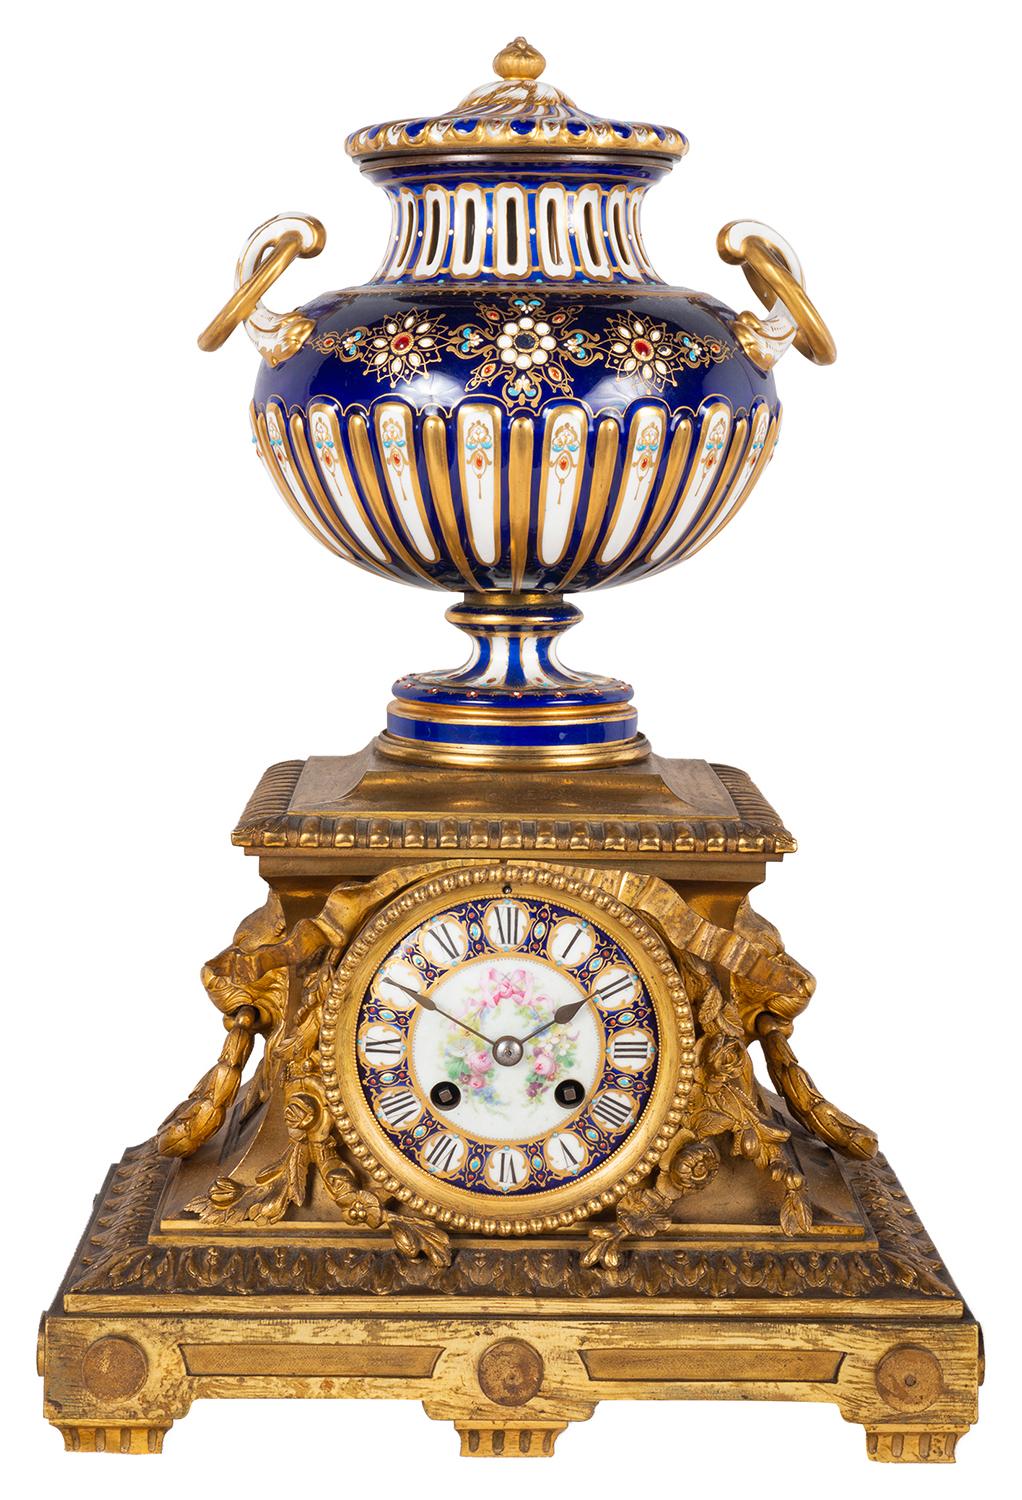 Garniture d'horloge en porcelaine de style Sèvres et en bronze doré de très bonne qualité, datant de la fin du XIXe siècle.
L'horloge possède ce merveilleux vase cannelé à couvercle, à fond bleu cobalt, avec des poignées en forme d'anneau et une